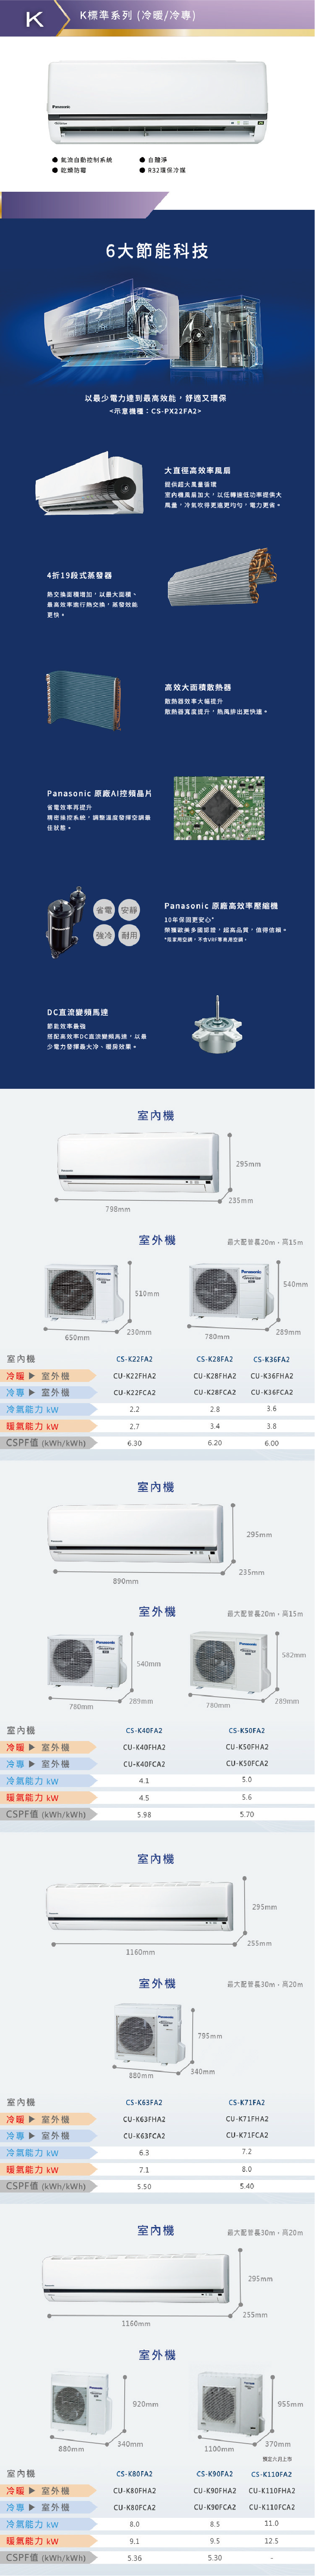 國際 CU-K28FCA2 4.5坪適用 K系列 分離式 變頻 冷專 冷氣 CS-K28FA2